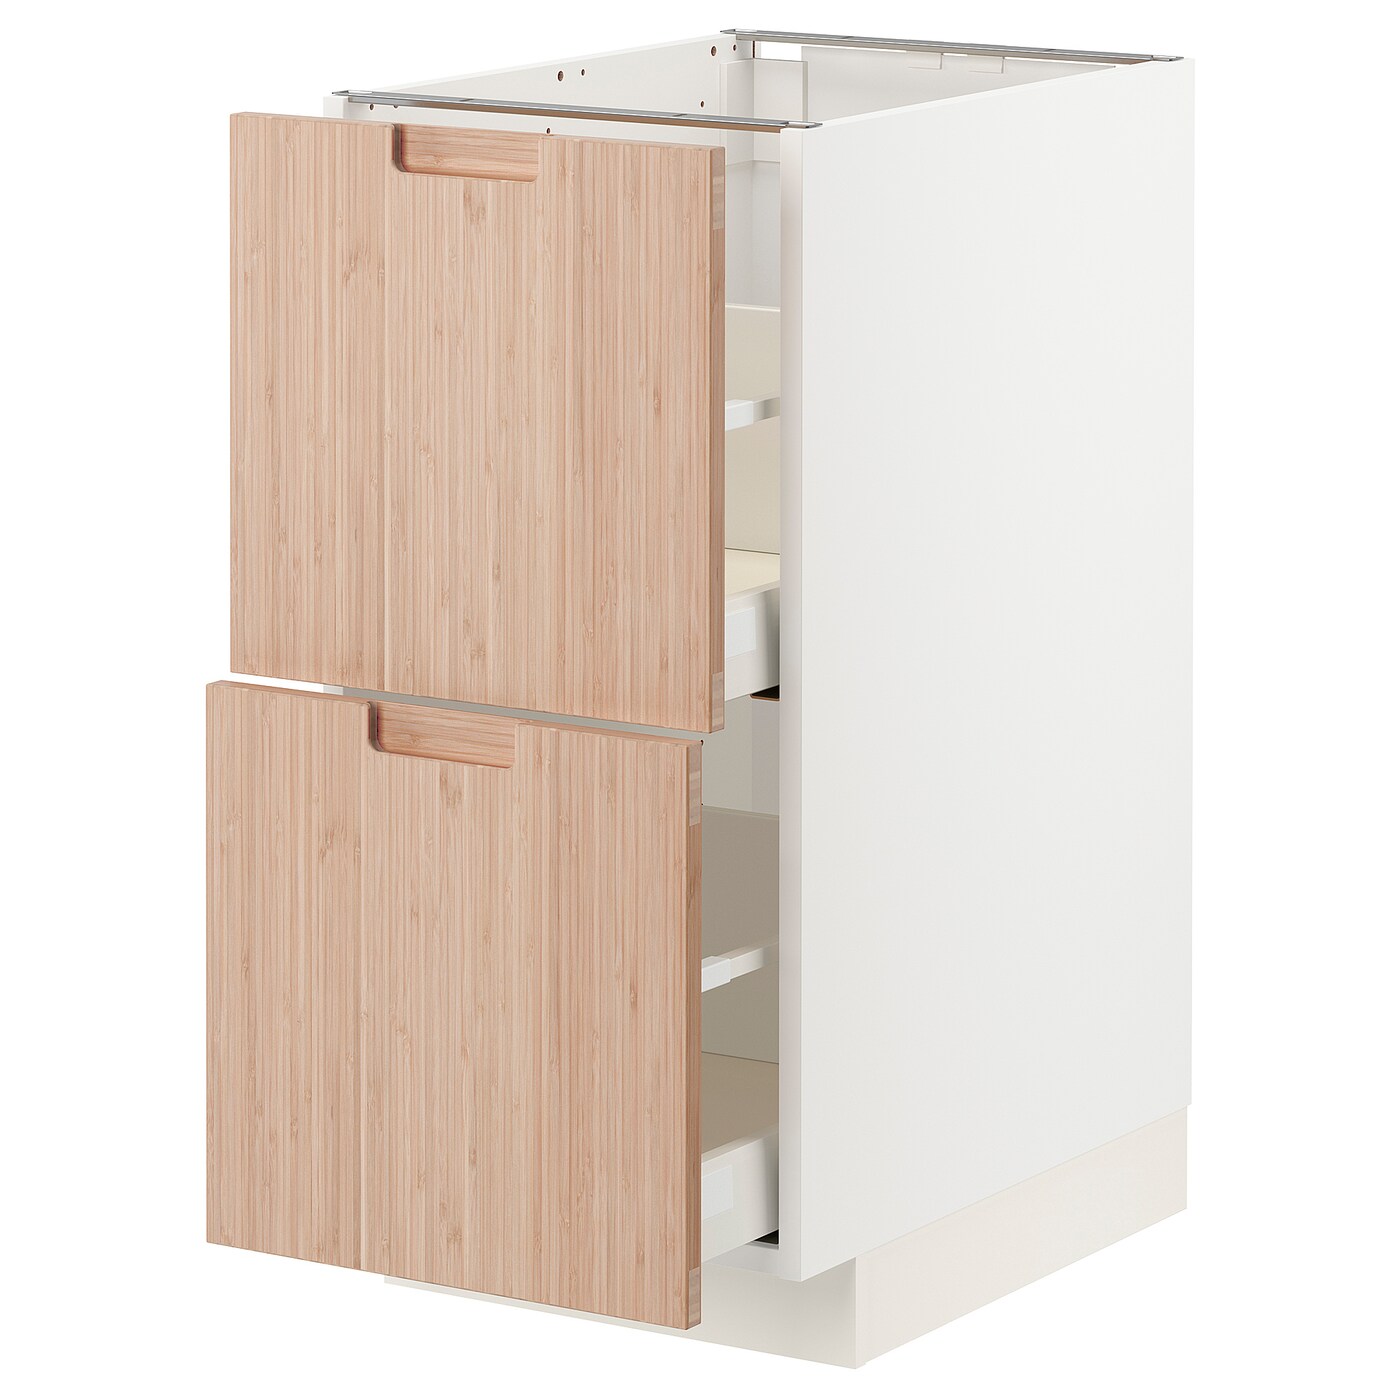 Напольный кухонный шкаф  - IKEA METOD MAXIMERA, 88x62x40см, белый/светлый бамбук, МЕТОД МАКСИМЕРА ИКЕА